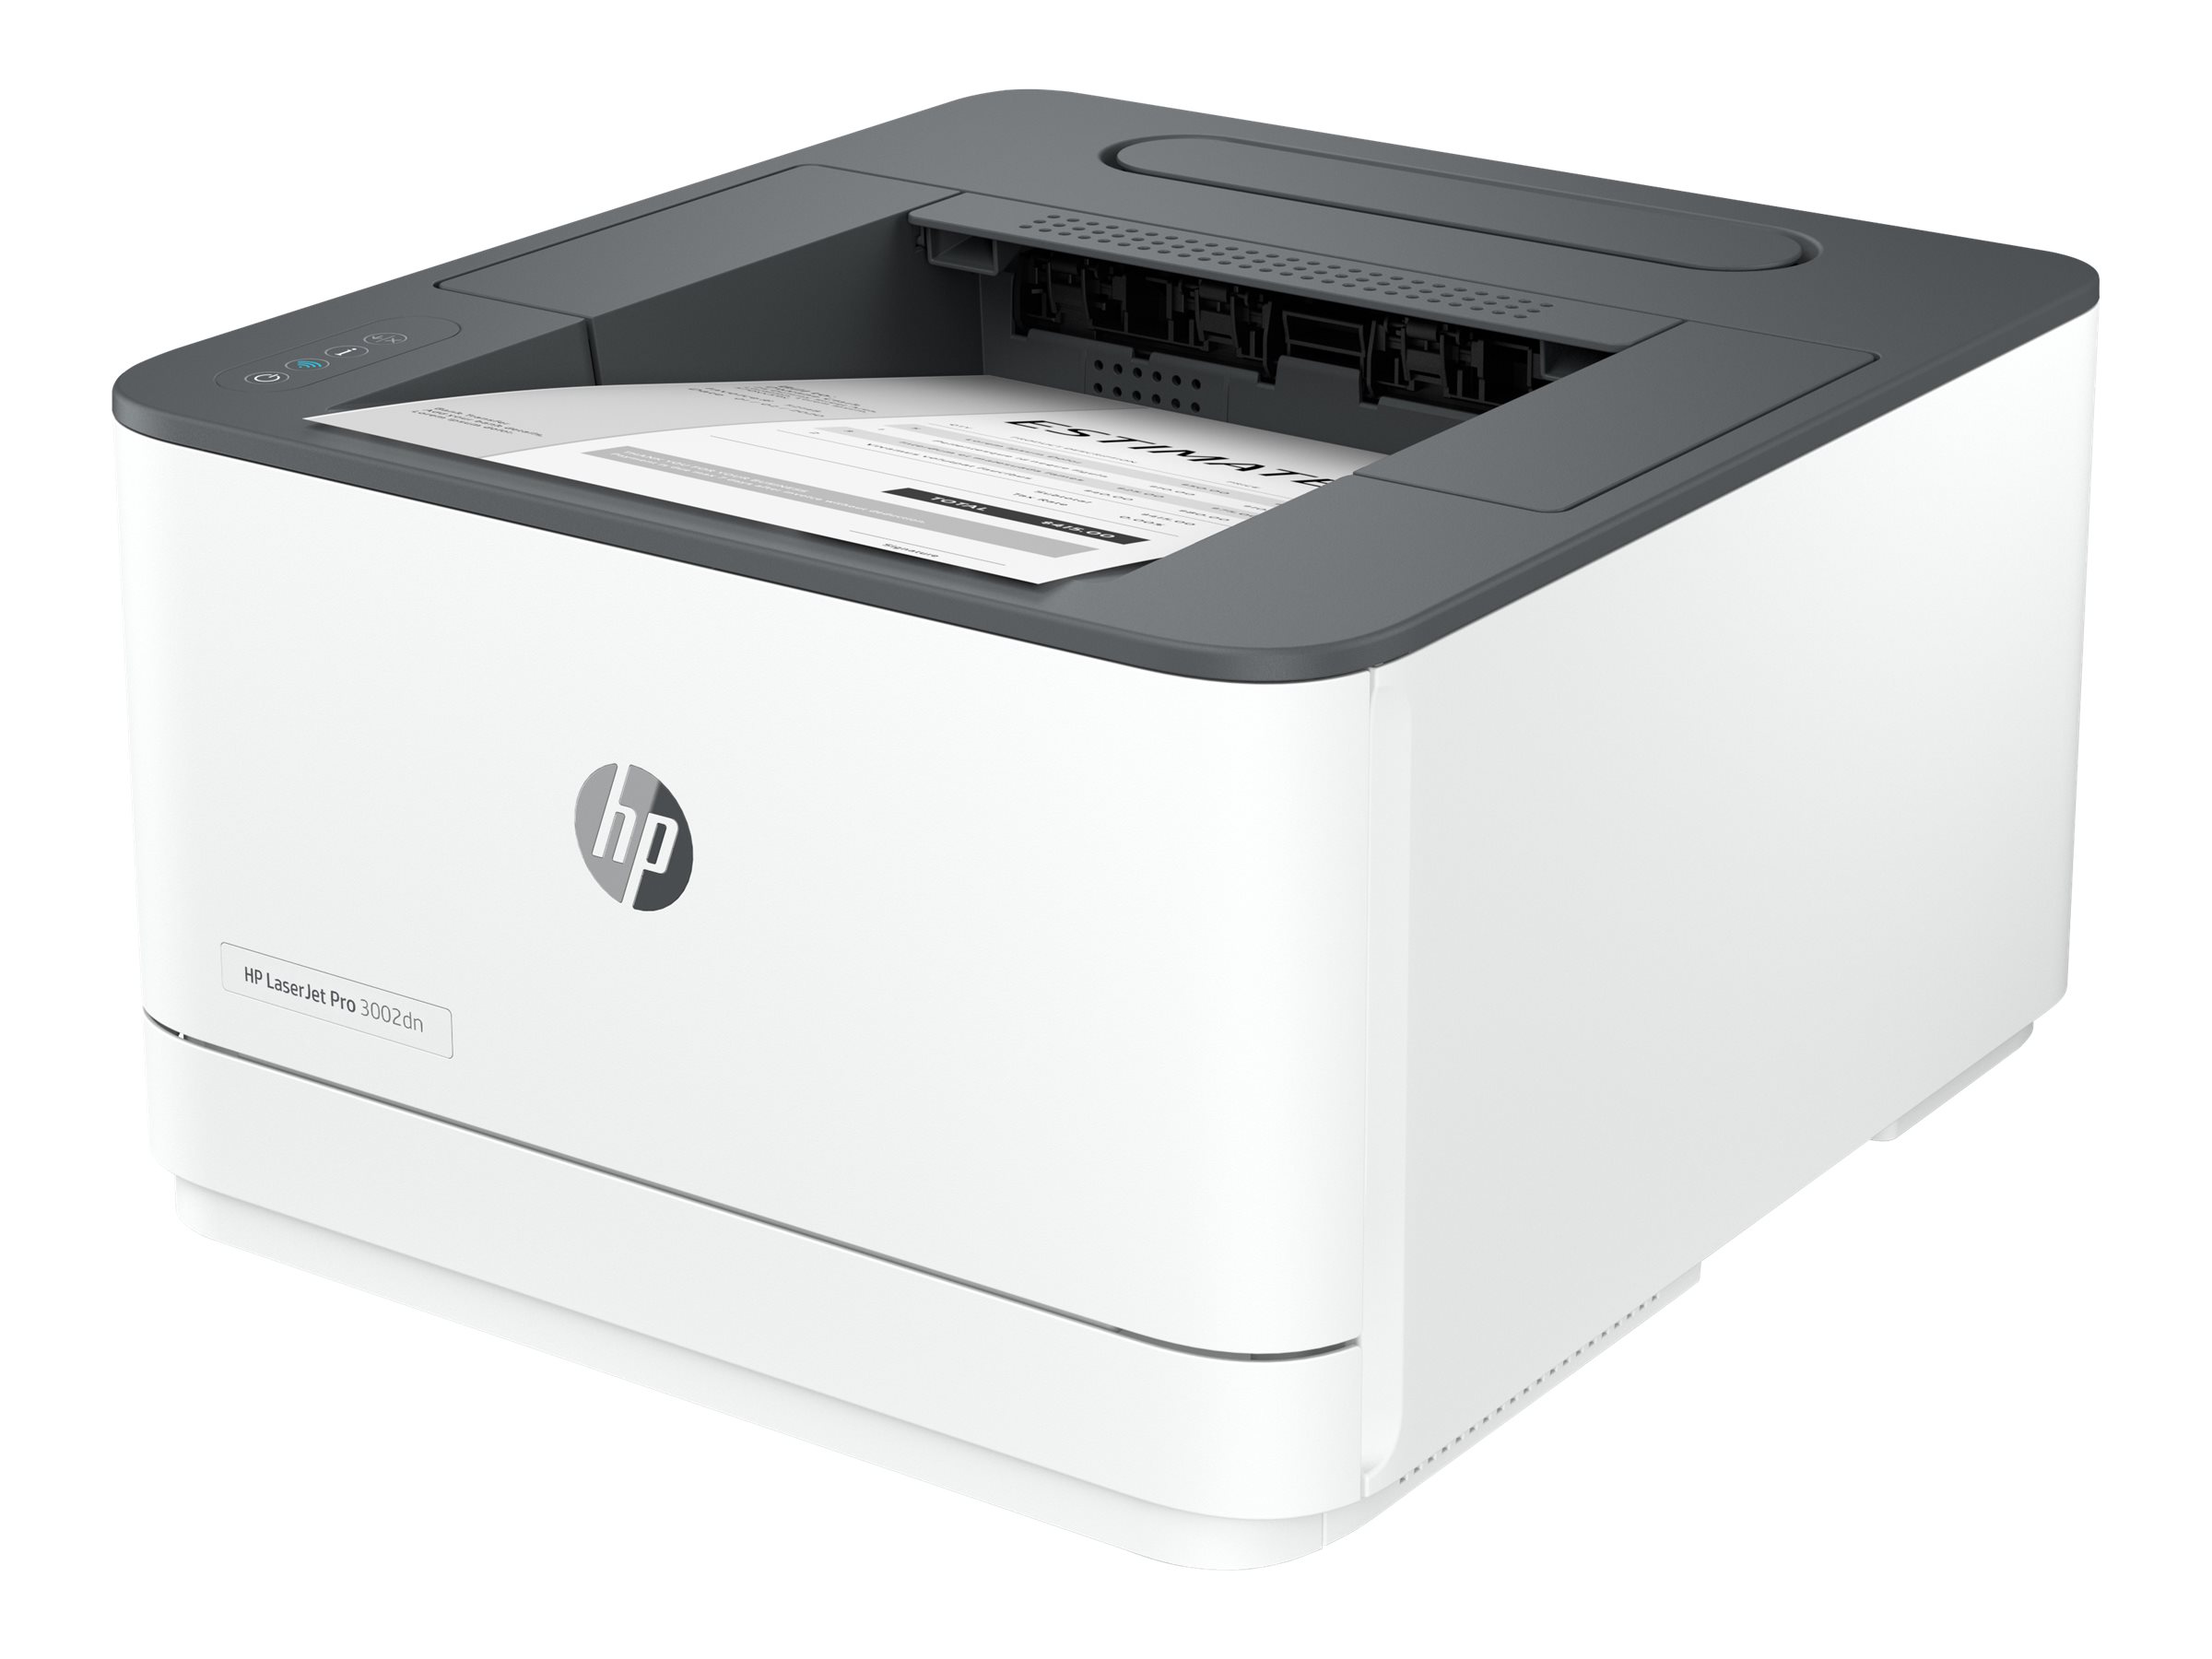 HP 3G651F#B19  HP LaserJet Pro Stampante 3002dn, Bianco e nero